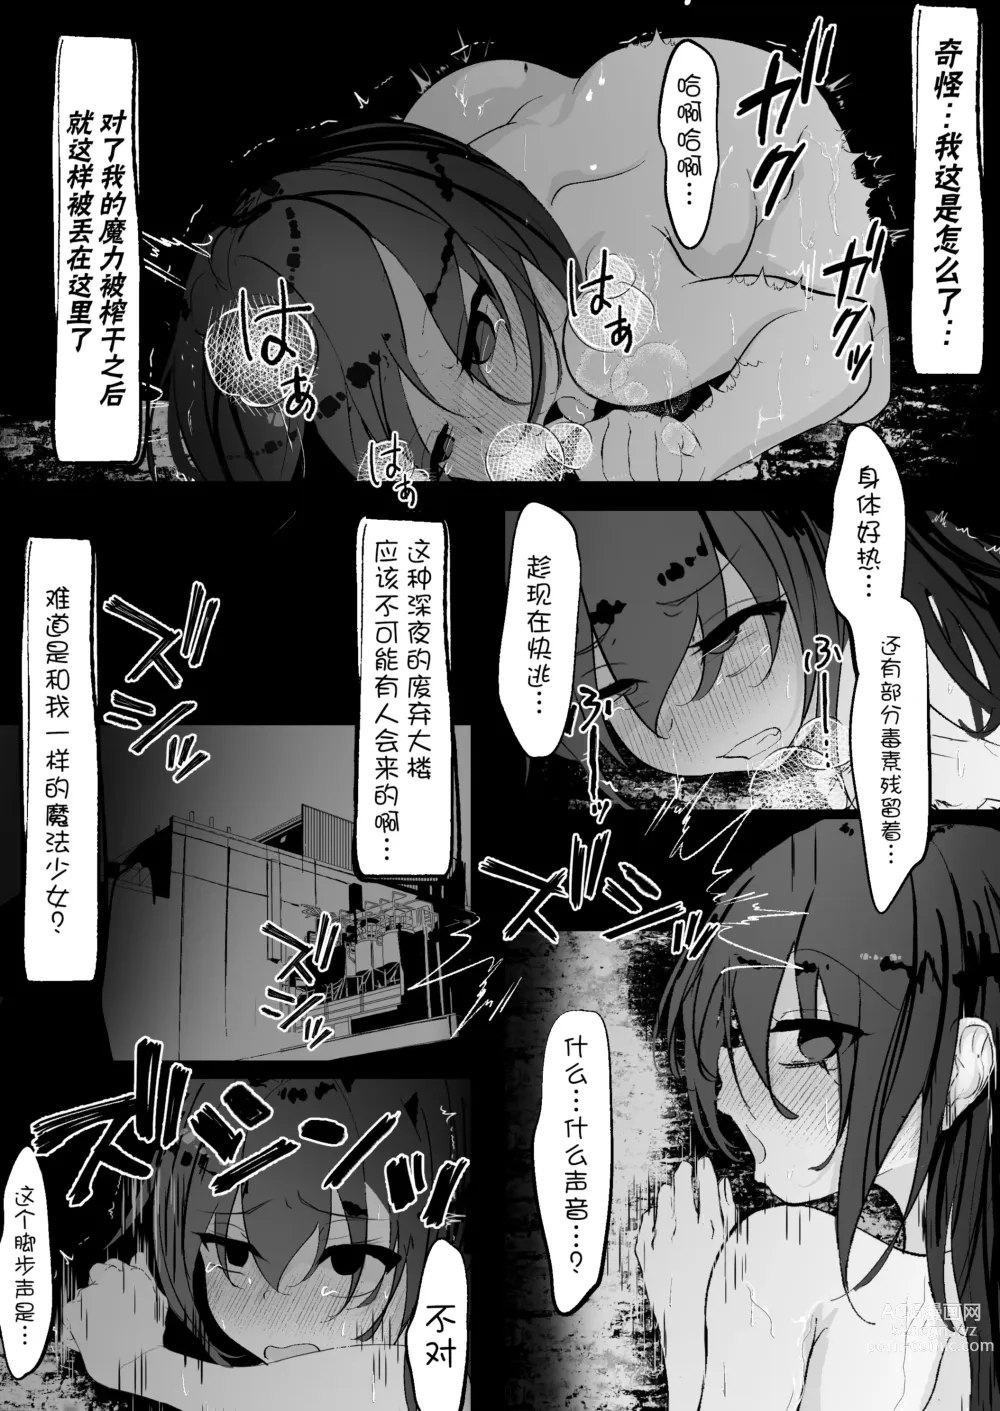 Page 24 of doujinshi 魔法少女遭受残酷待遇的故事